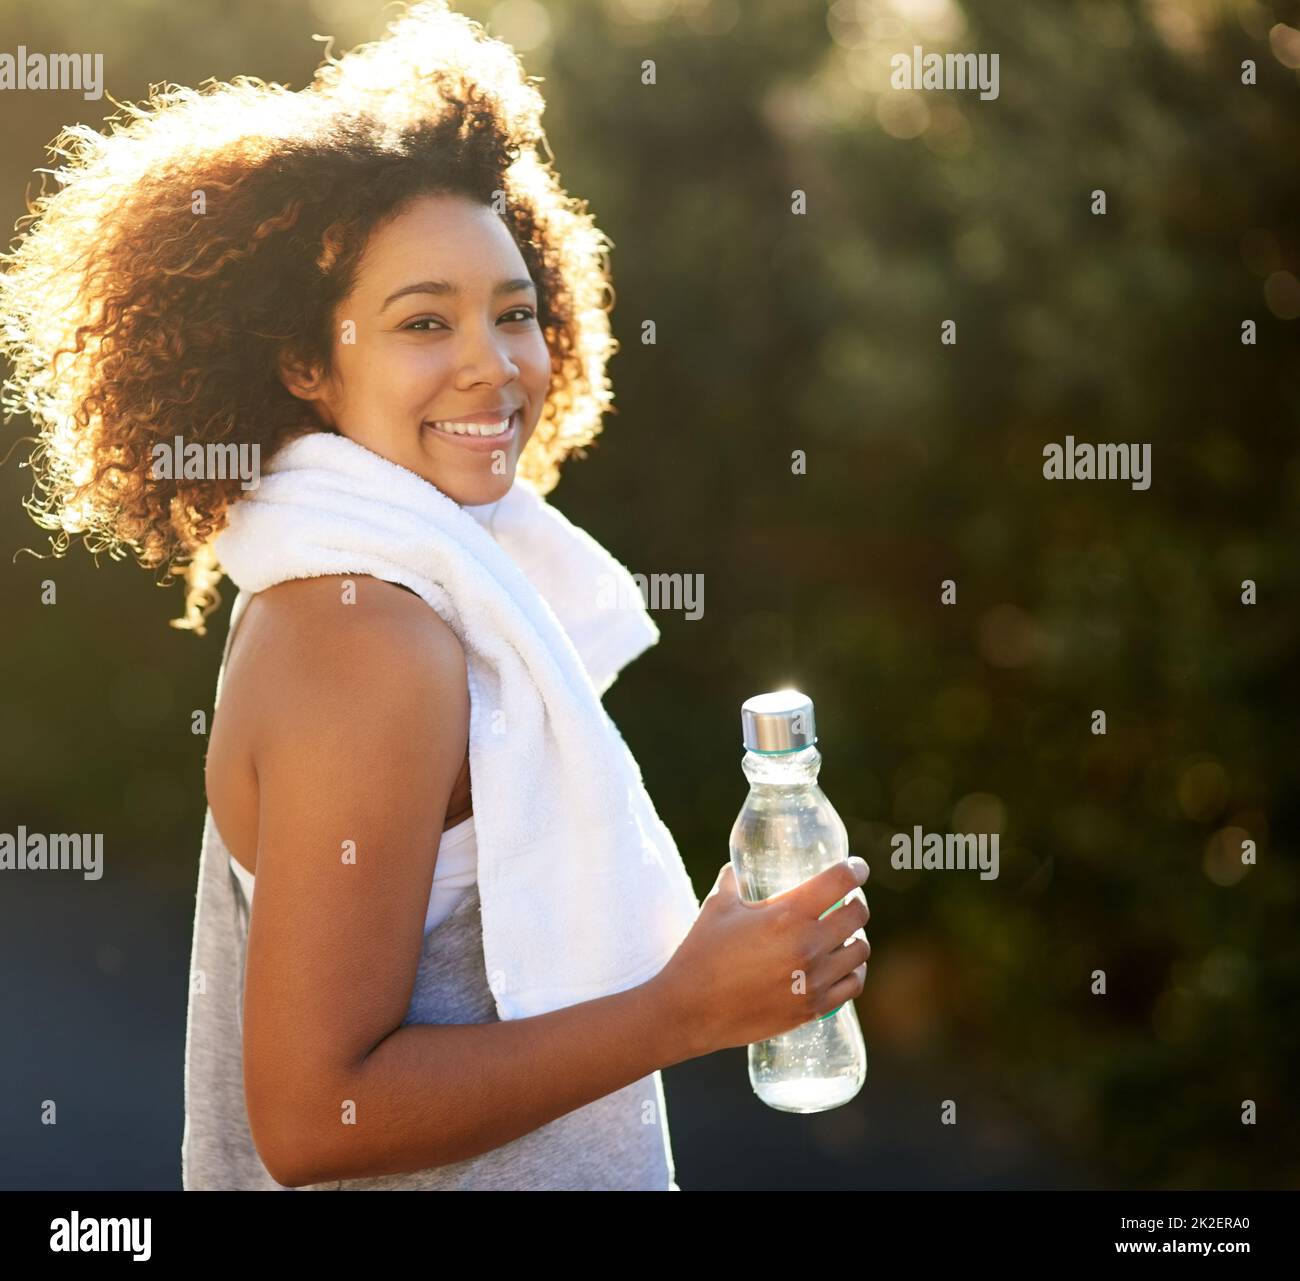 Bleib hydratisiert. Bleiben Sie gesund. Porträt einer attraktiven jungen Frau, die während ihres Trainings einen Drink bekommt. Stockfoto